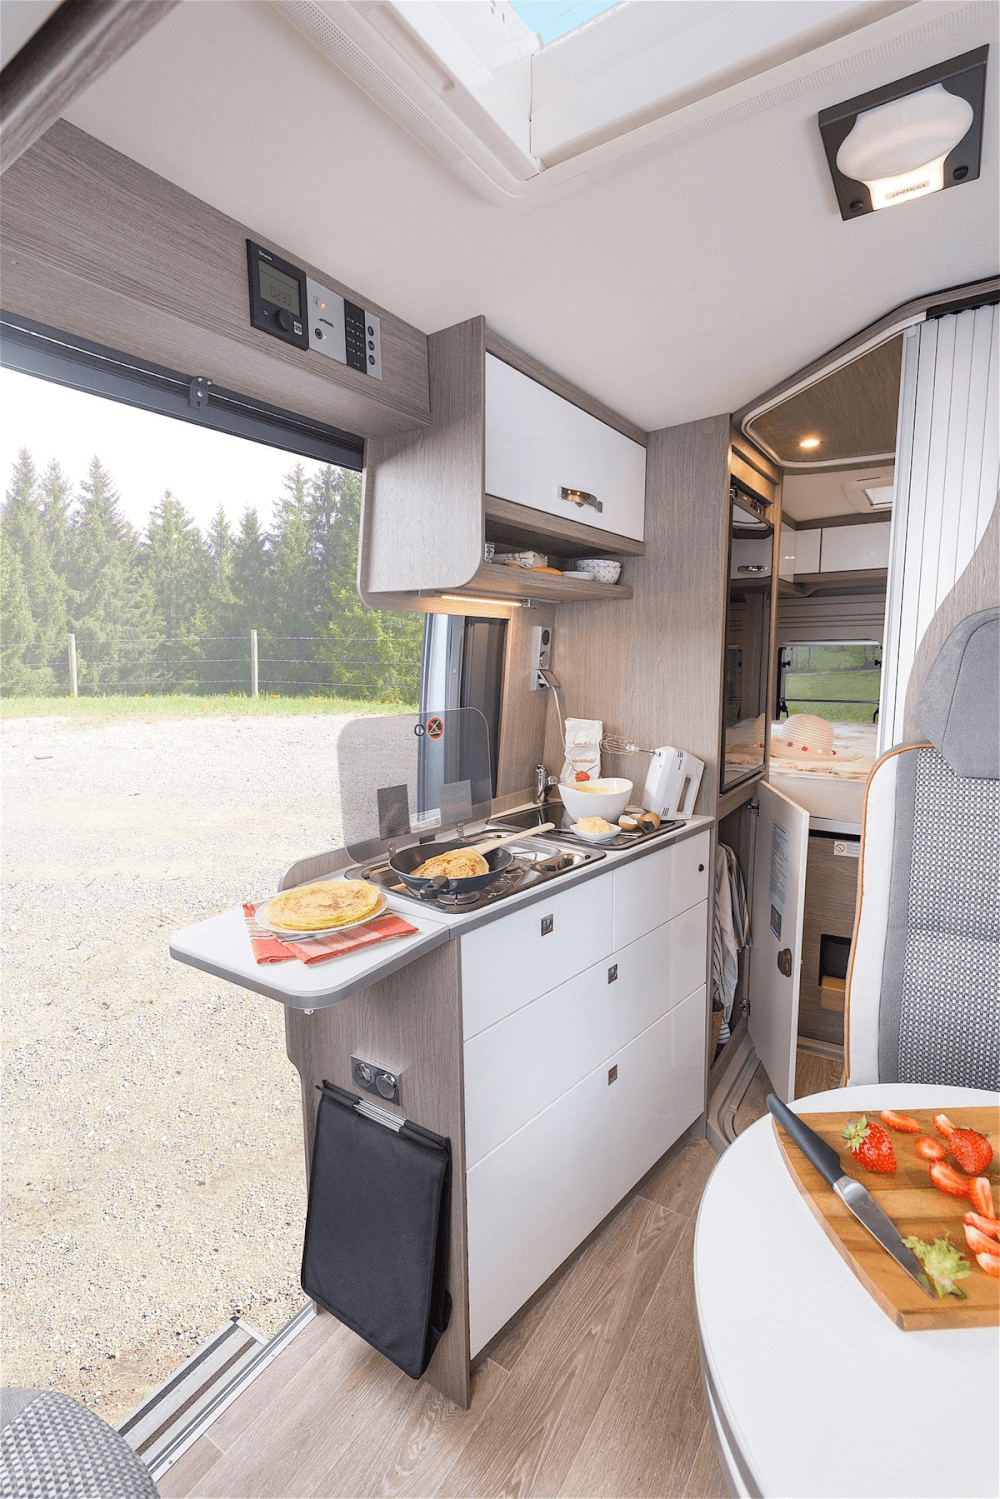 Pössl 2WIN R 600 (Fiat) Kastenwagen 2021 Küche